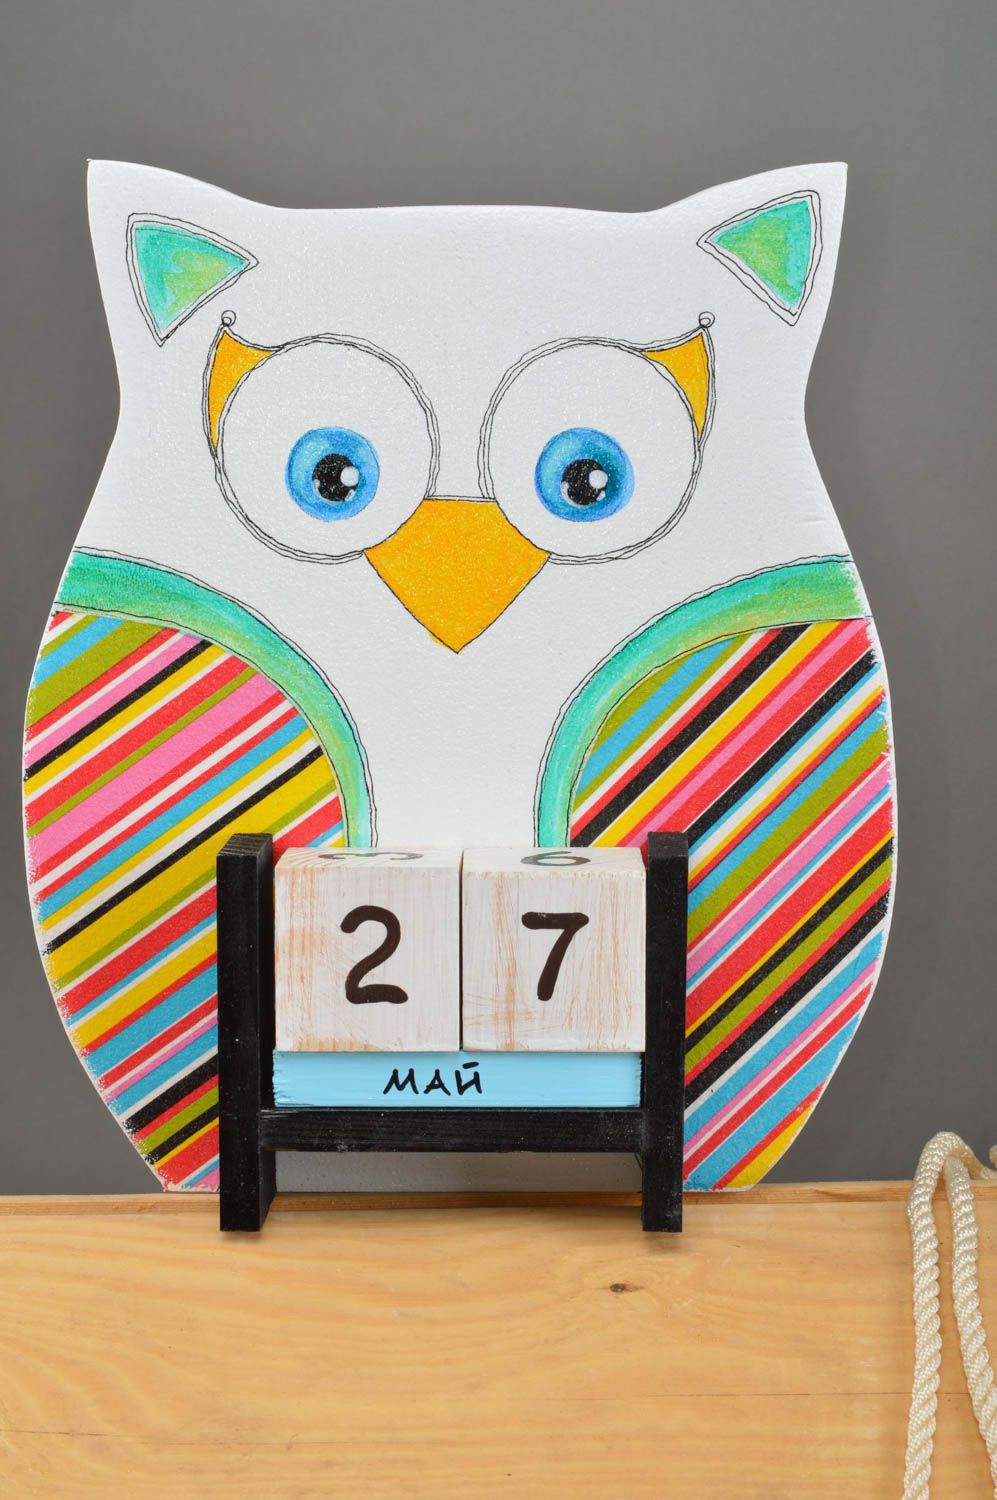 Детский календарь в виде совы из фанеры декупаж в полоску ручной работы фото 2